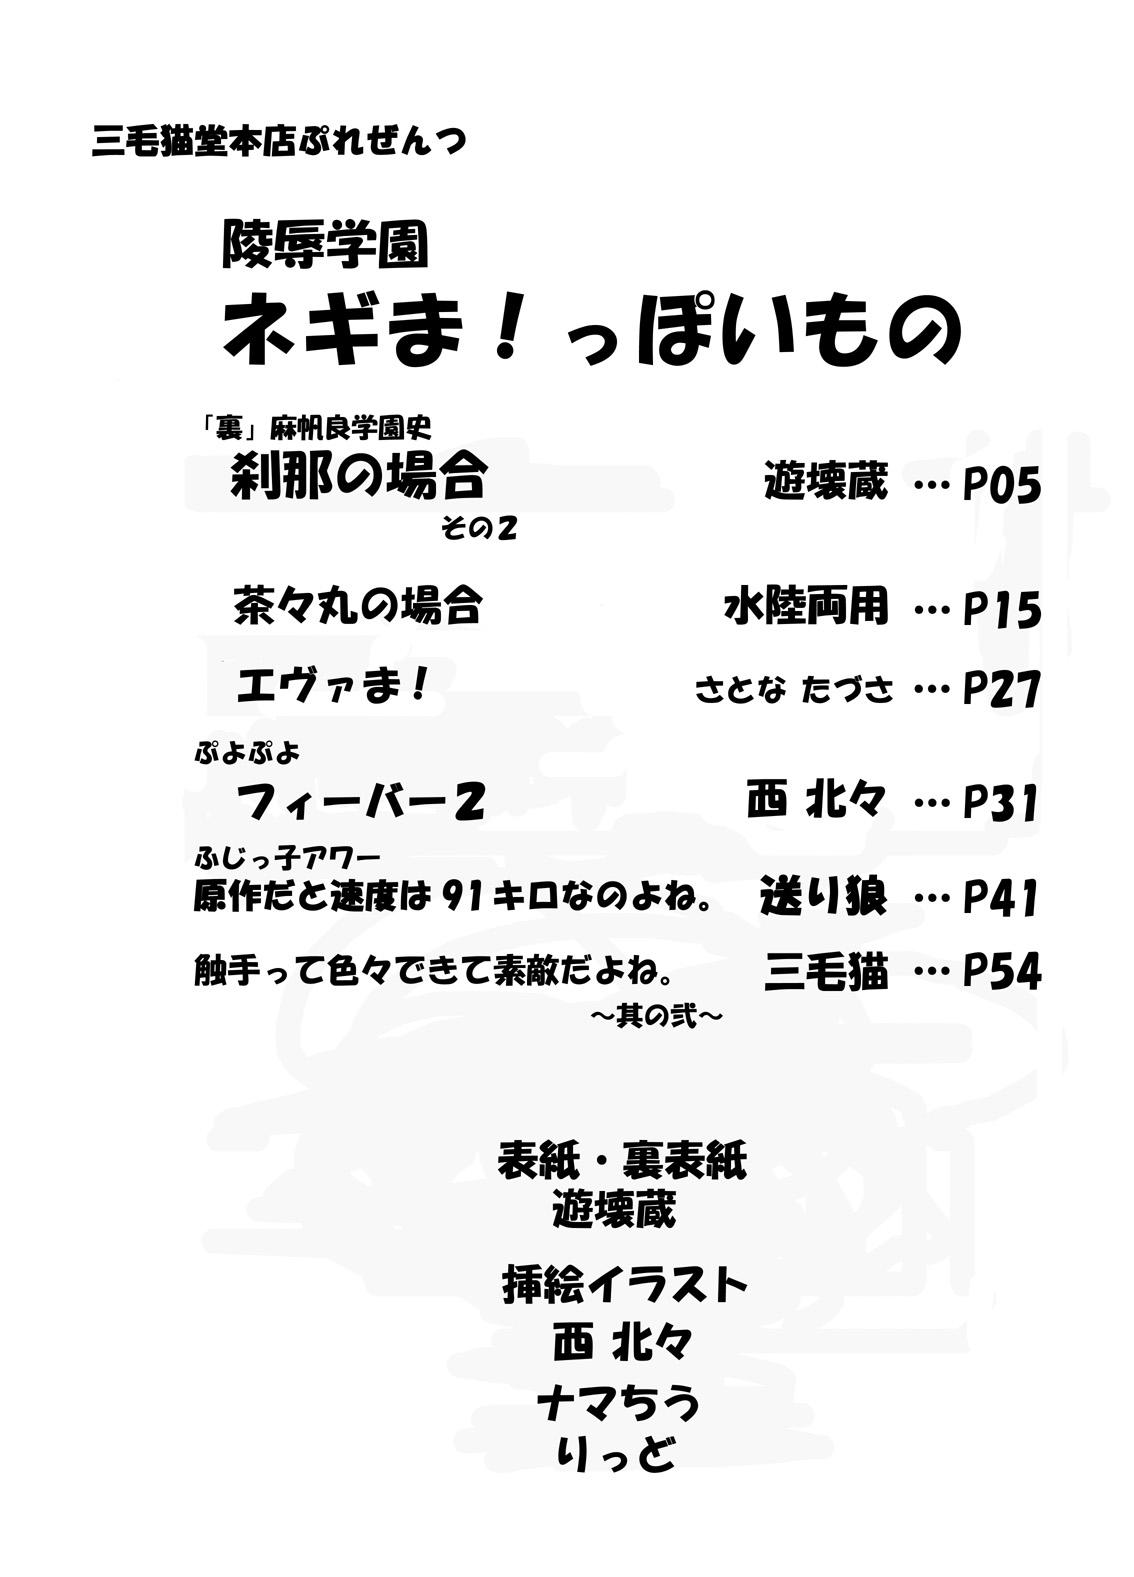 Wet Cunts Ryoujoku Gakuen Negima! Poimono vol. 1 - Mahou sensei negima Cornudo - Page 3